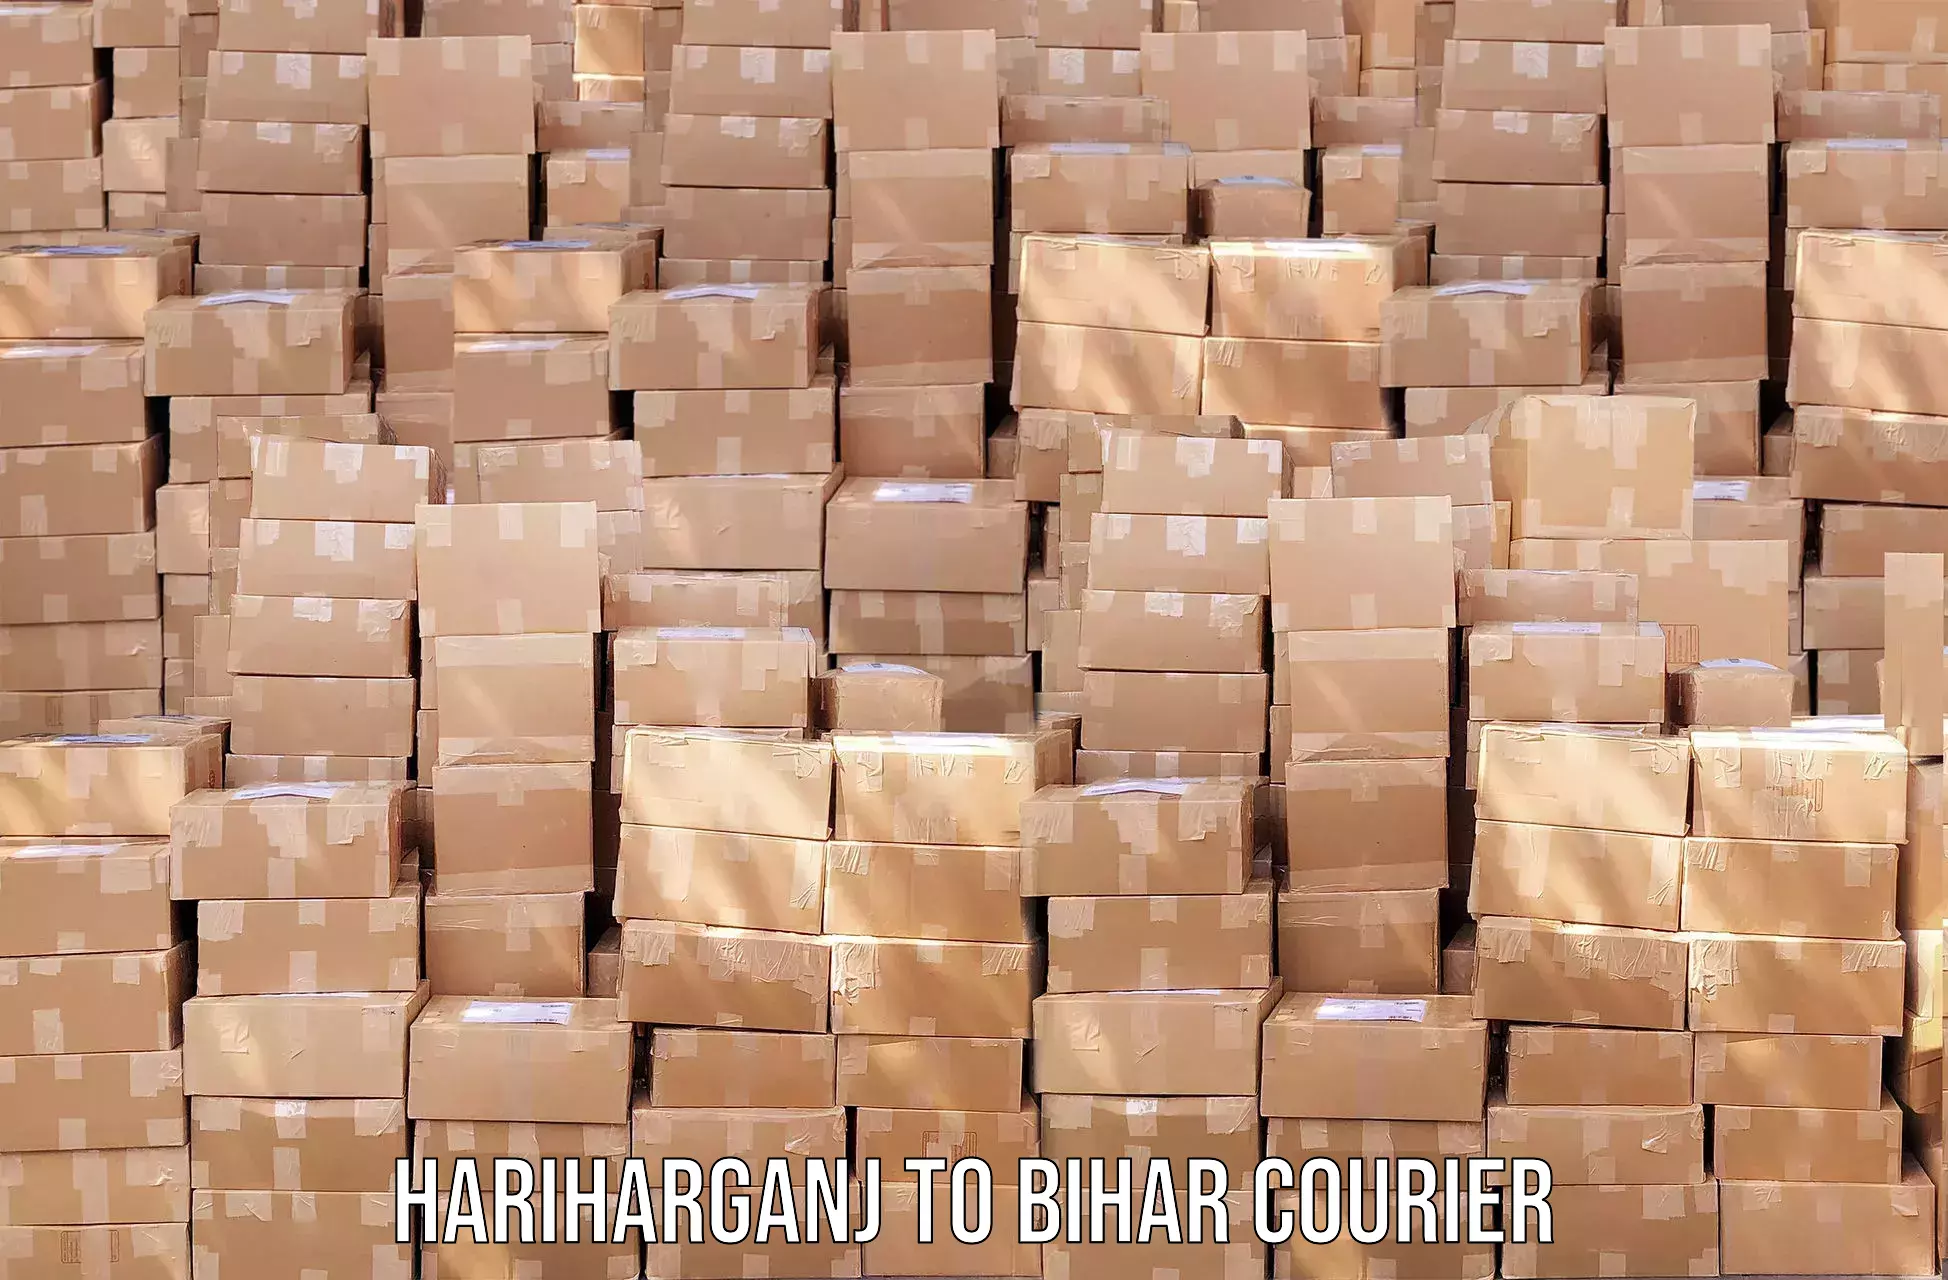 Professional courier handling Hariharganj to Bihar